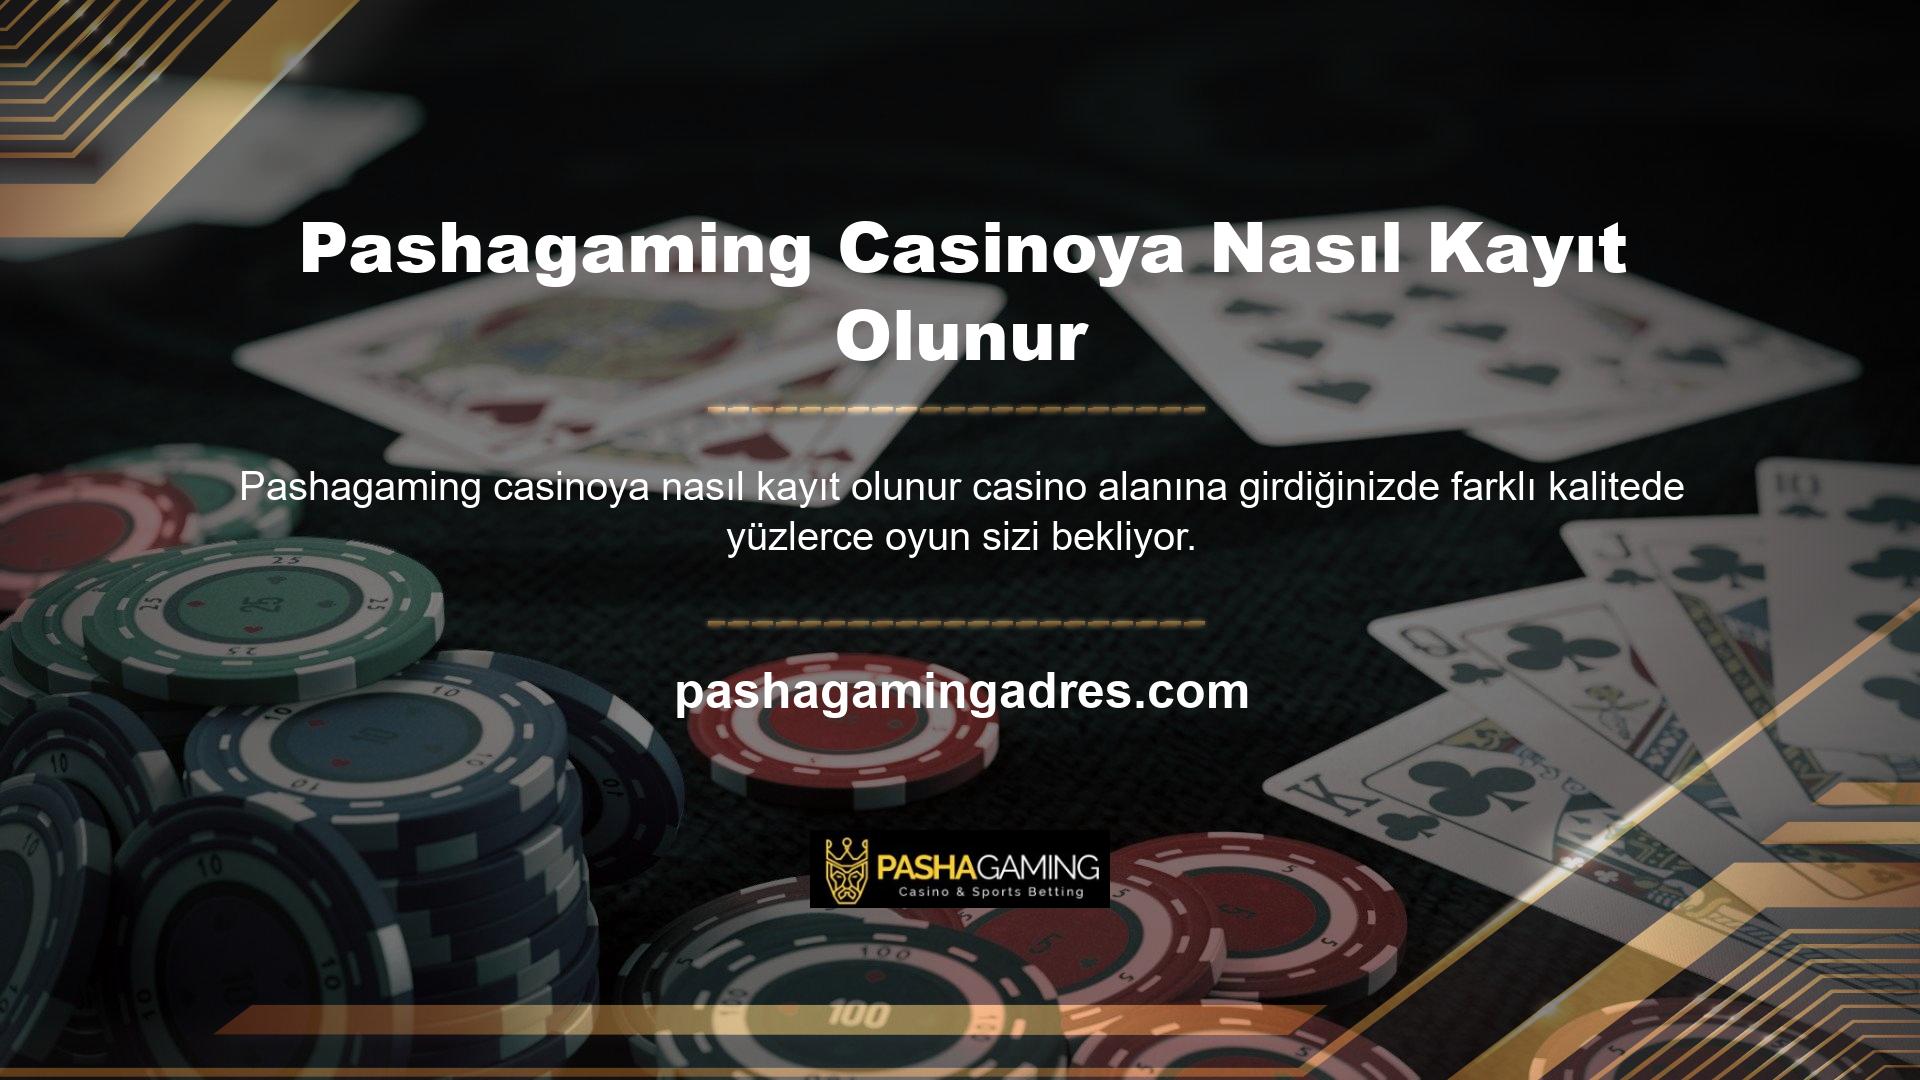 Canlı casino bölümünde yer alan masalar, siteyi diğerlerinden ayıran en önemli özelliklerden biri olup, kaliteli oyun sağlayıcılar tarafından oluşturulmuştur